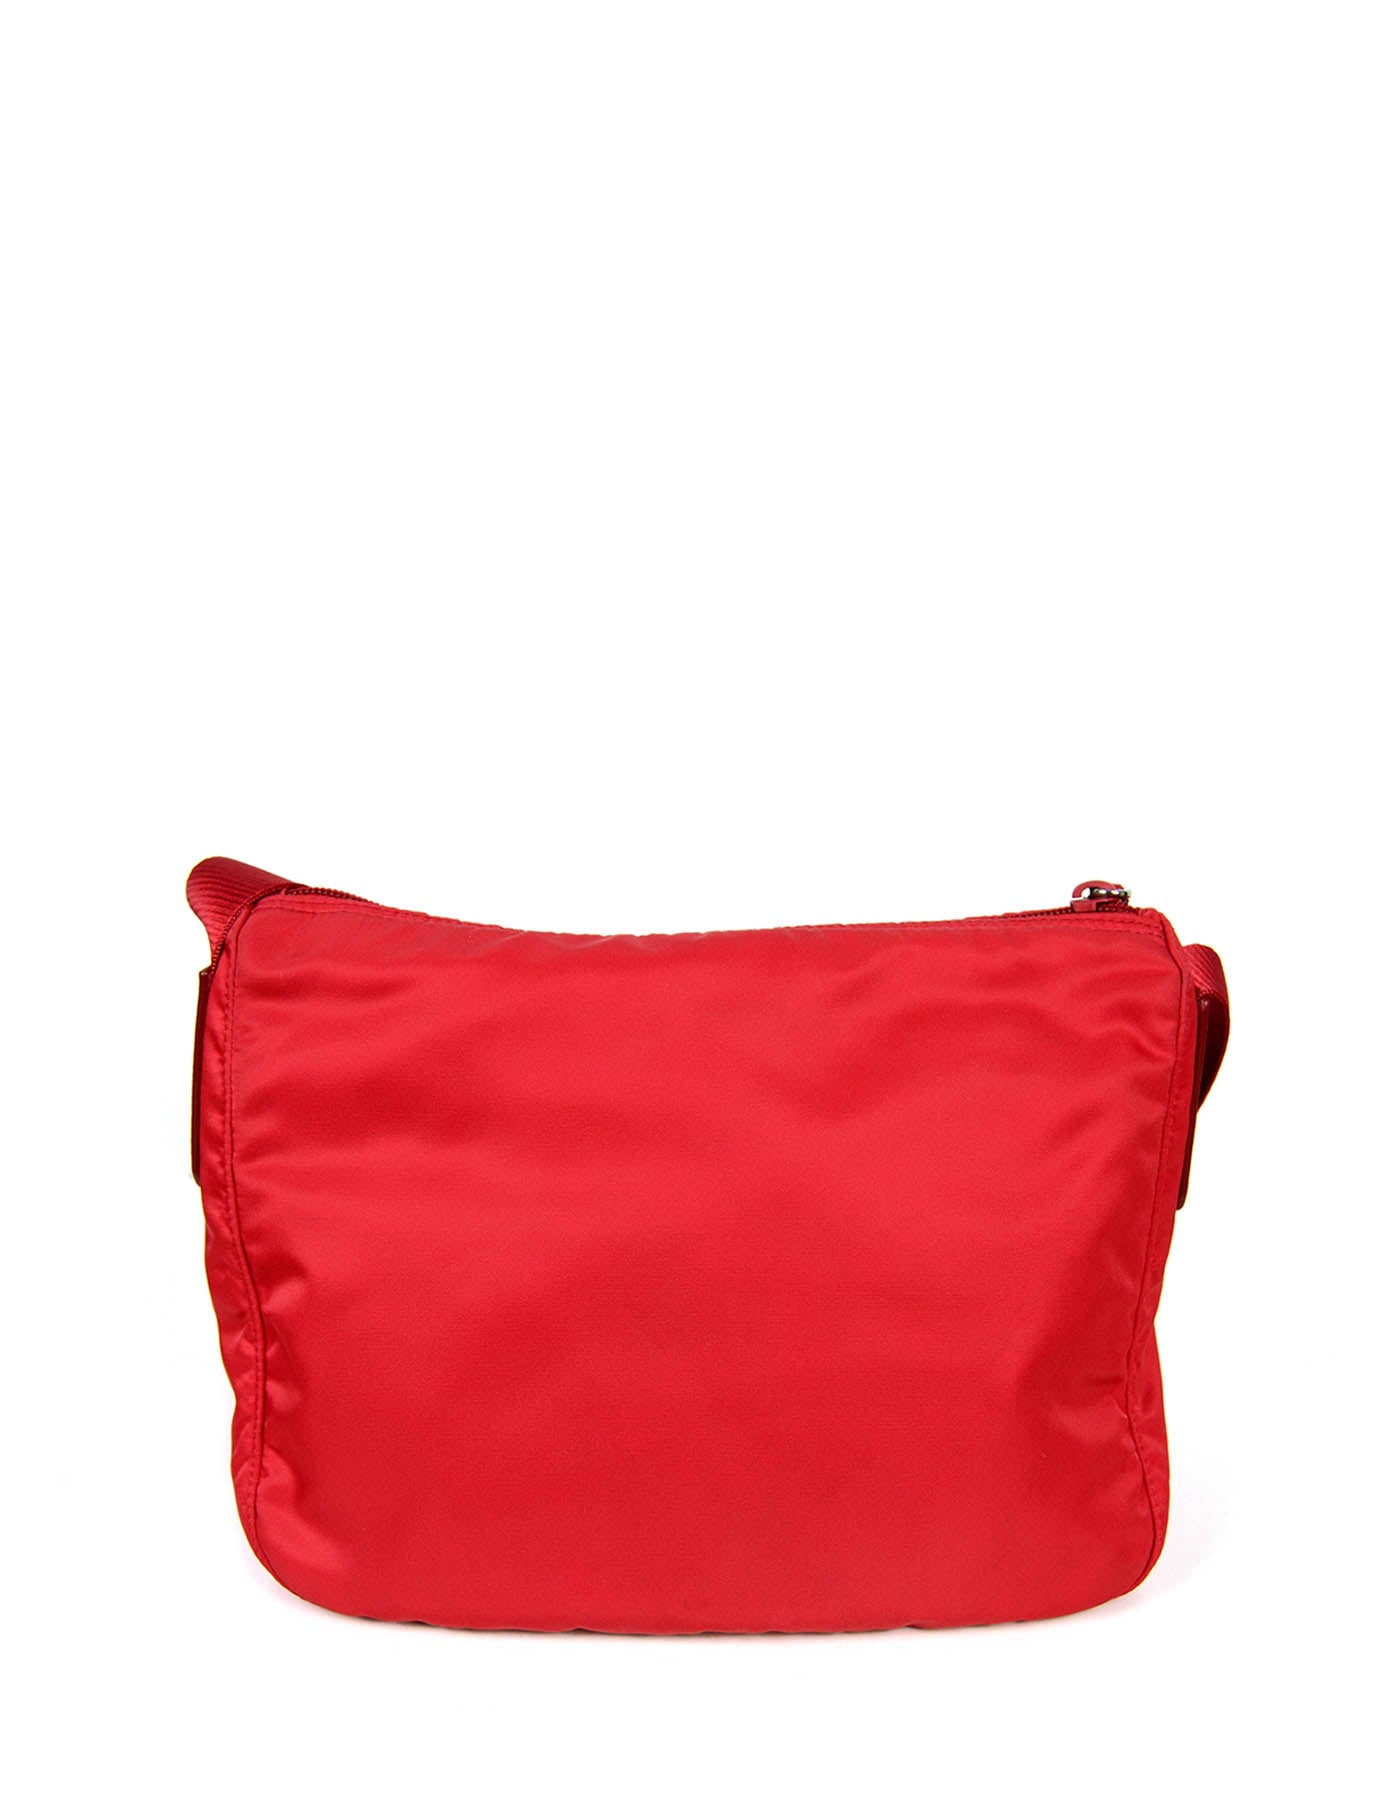 Prada Rosso Red Nylon Messenger Bag